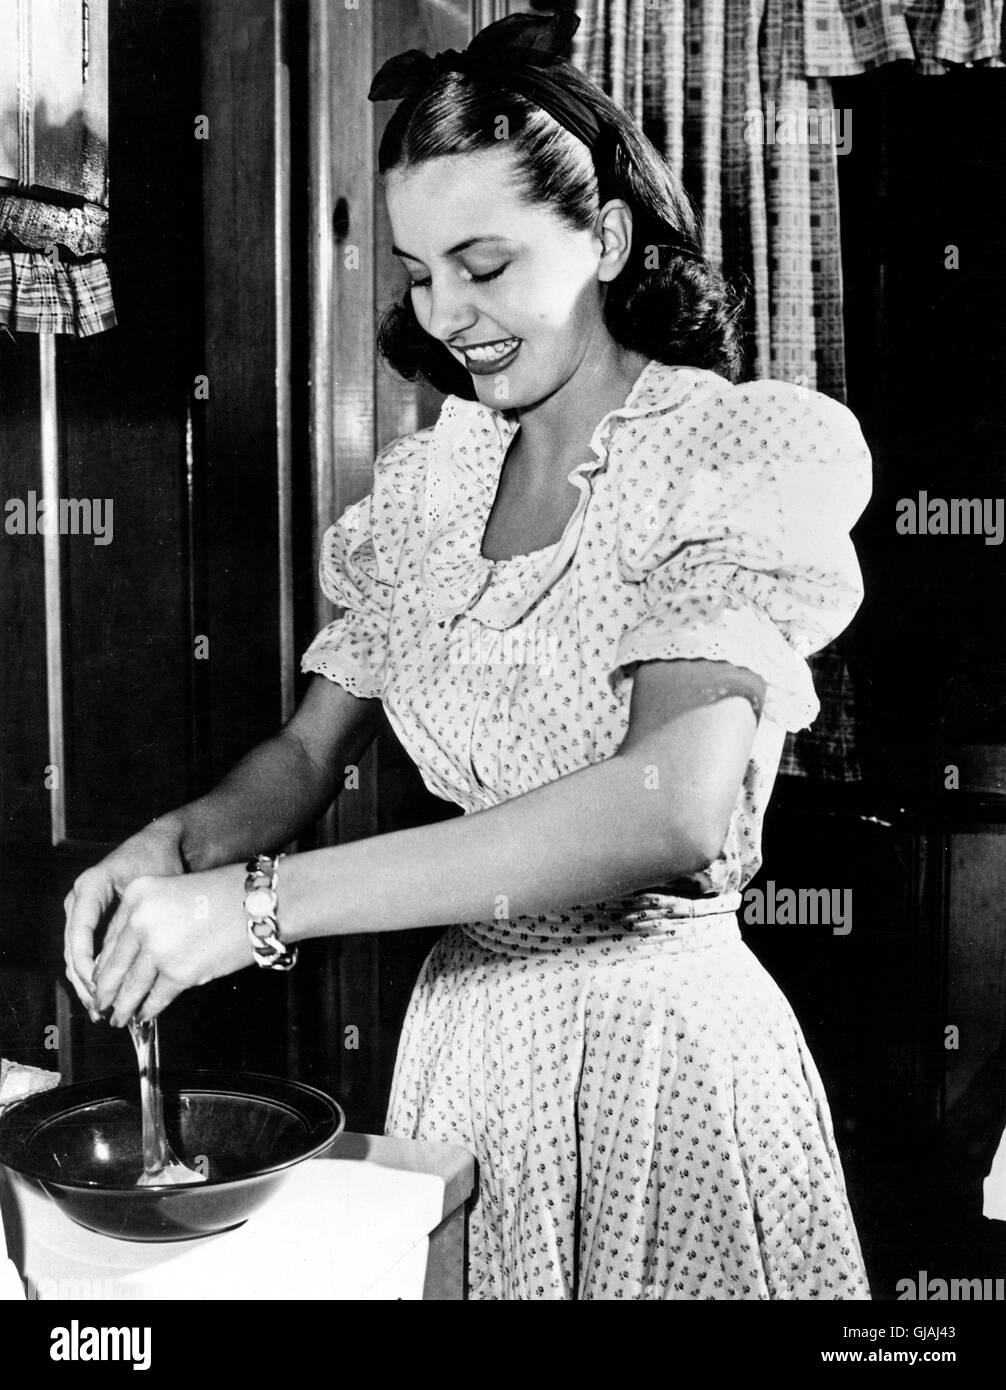 Die amerikanische TŠnzerin und Schauspielerin Cyd Charisse, USA 1950er Jahre. American dancer and actress Cyd Charisse, USA 1950s. Stock Photo